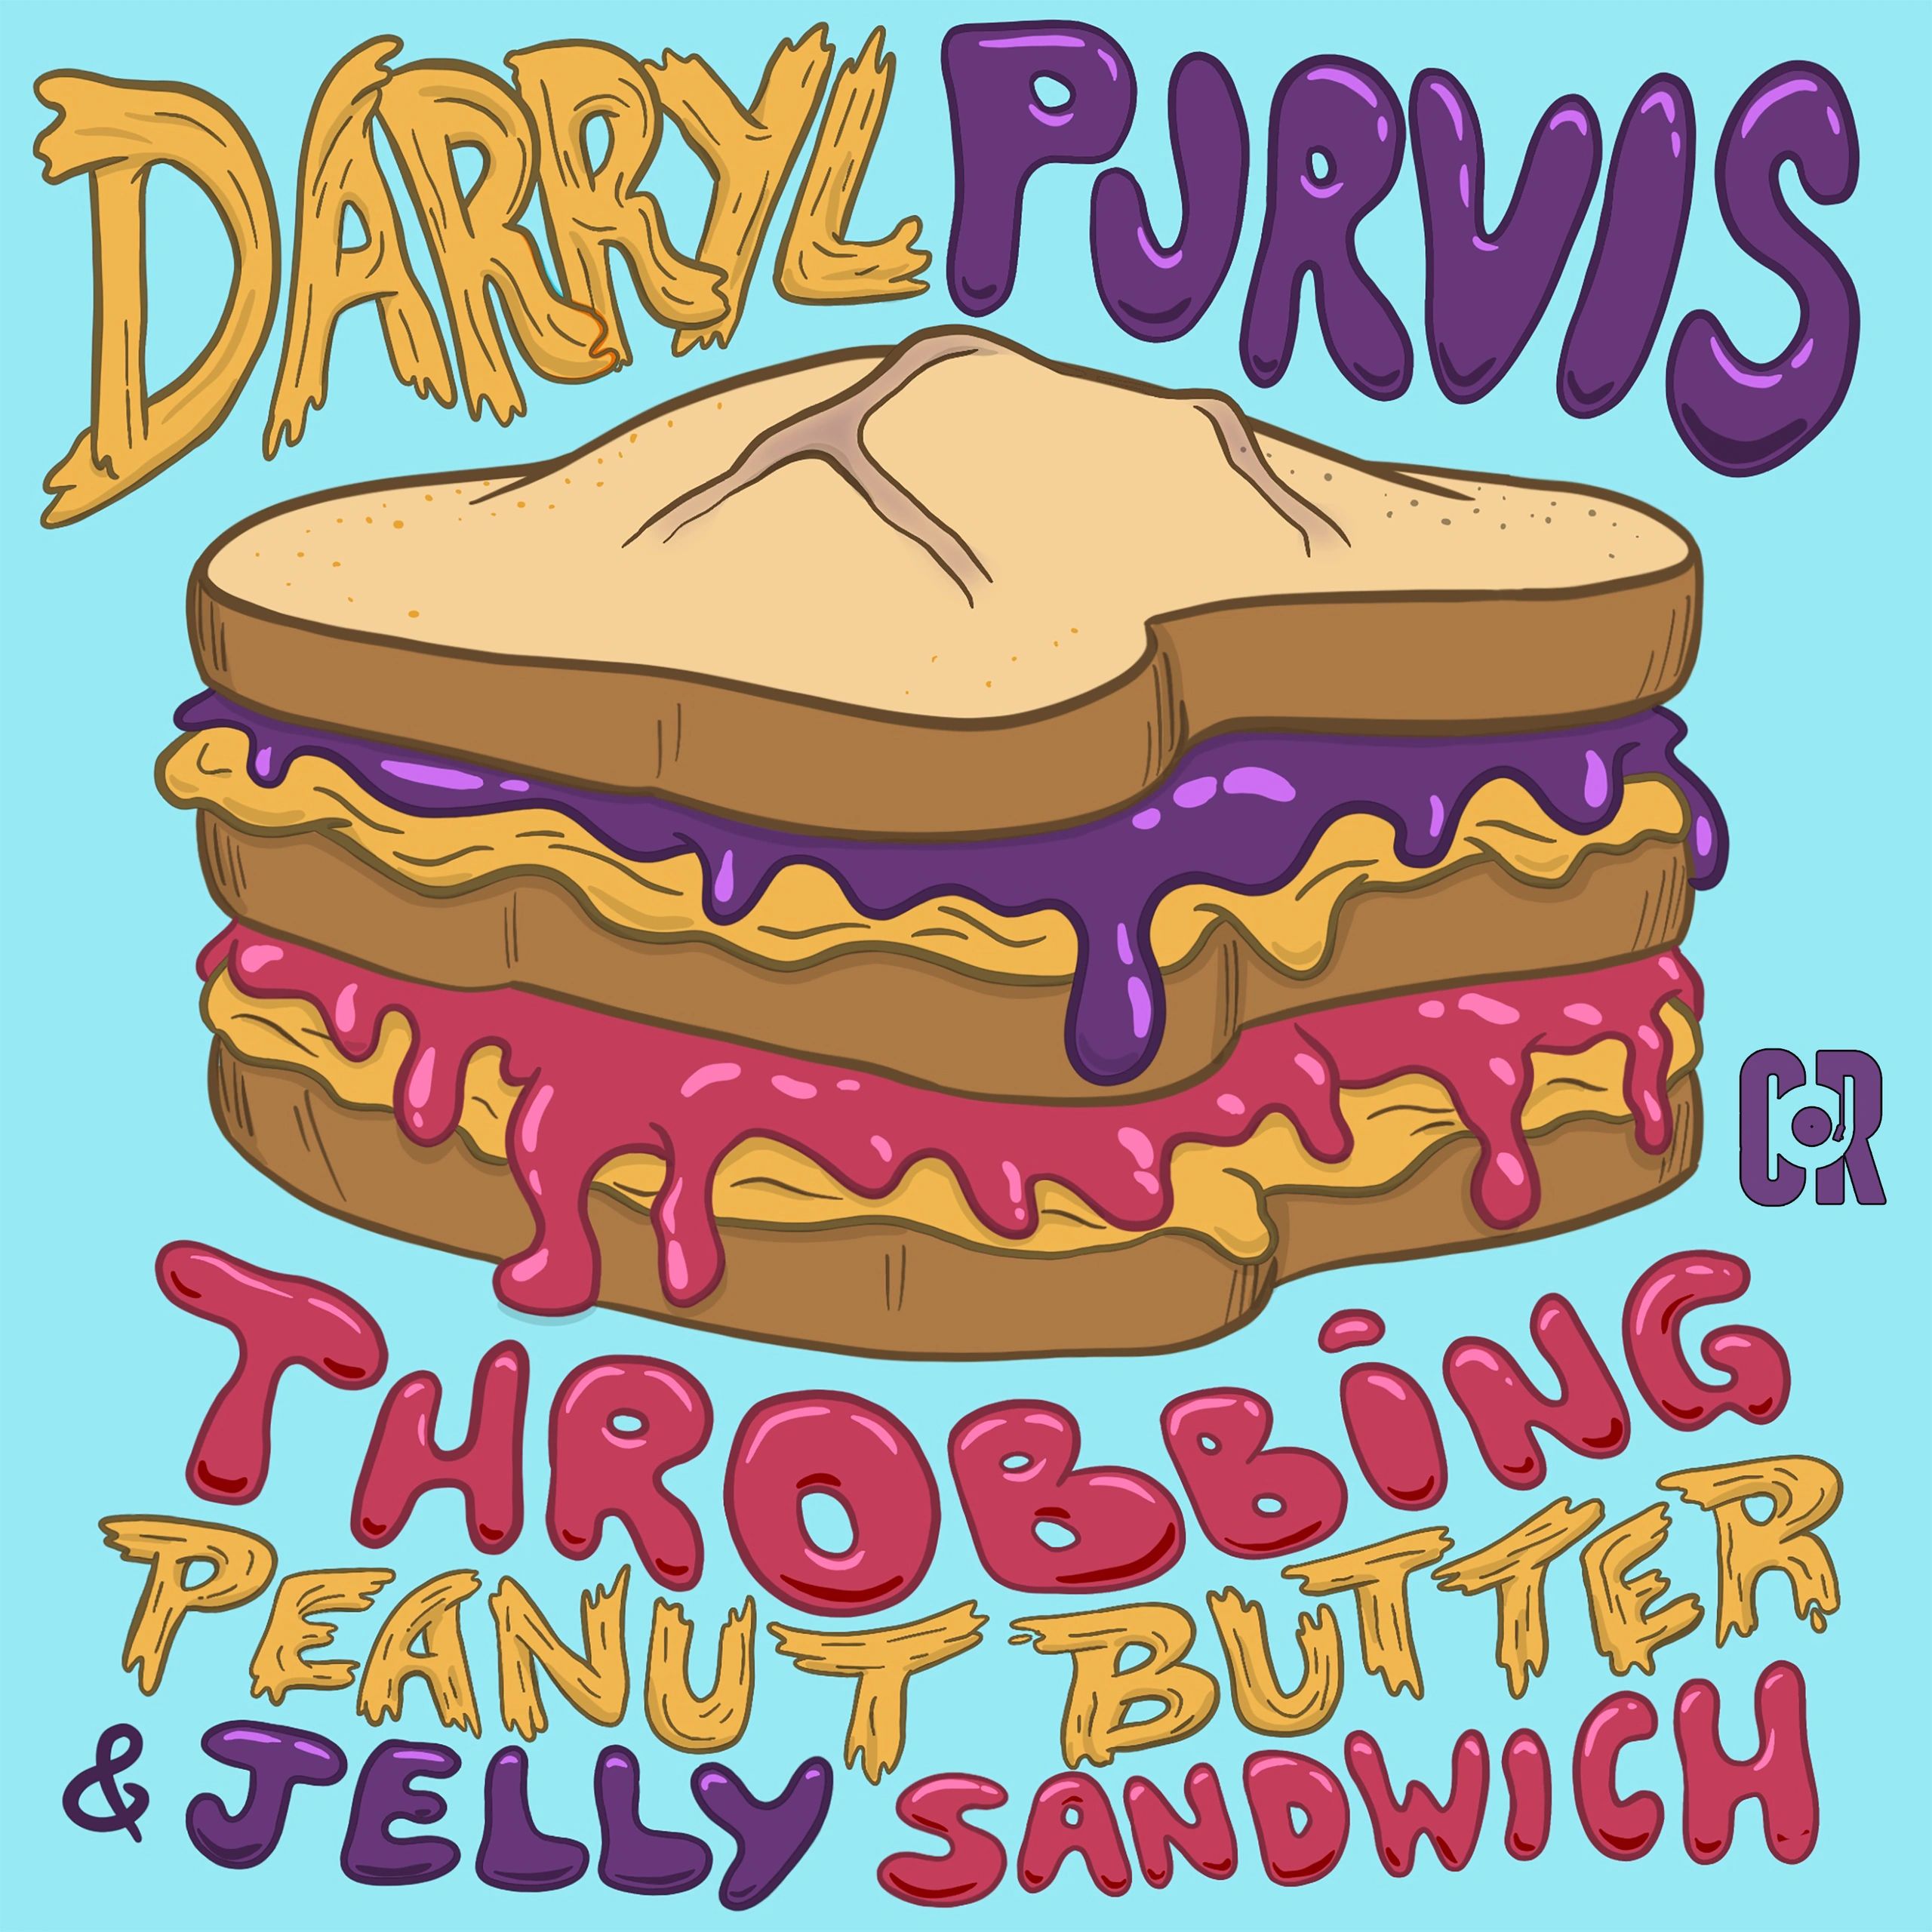 Darryl Purvis Comedy Album